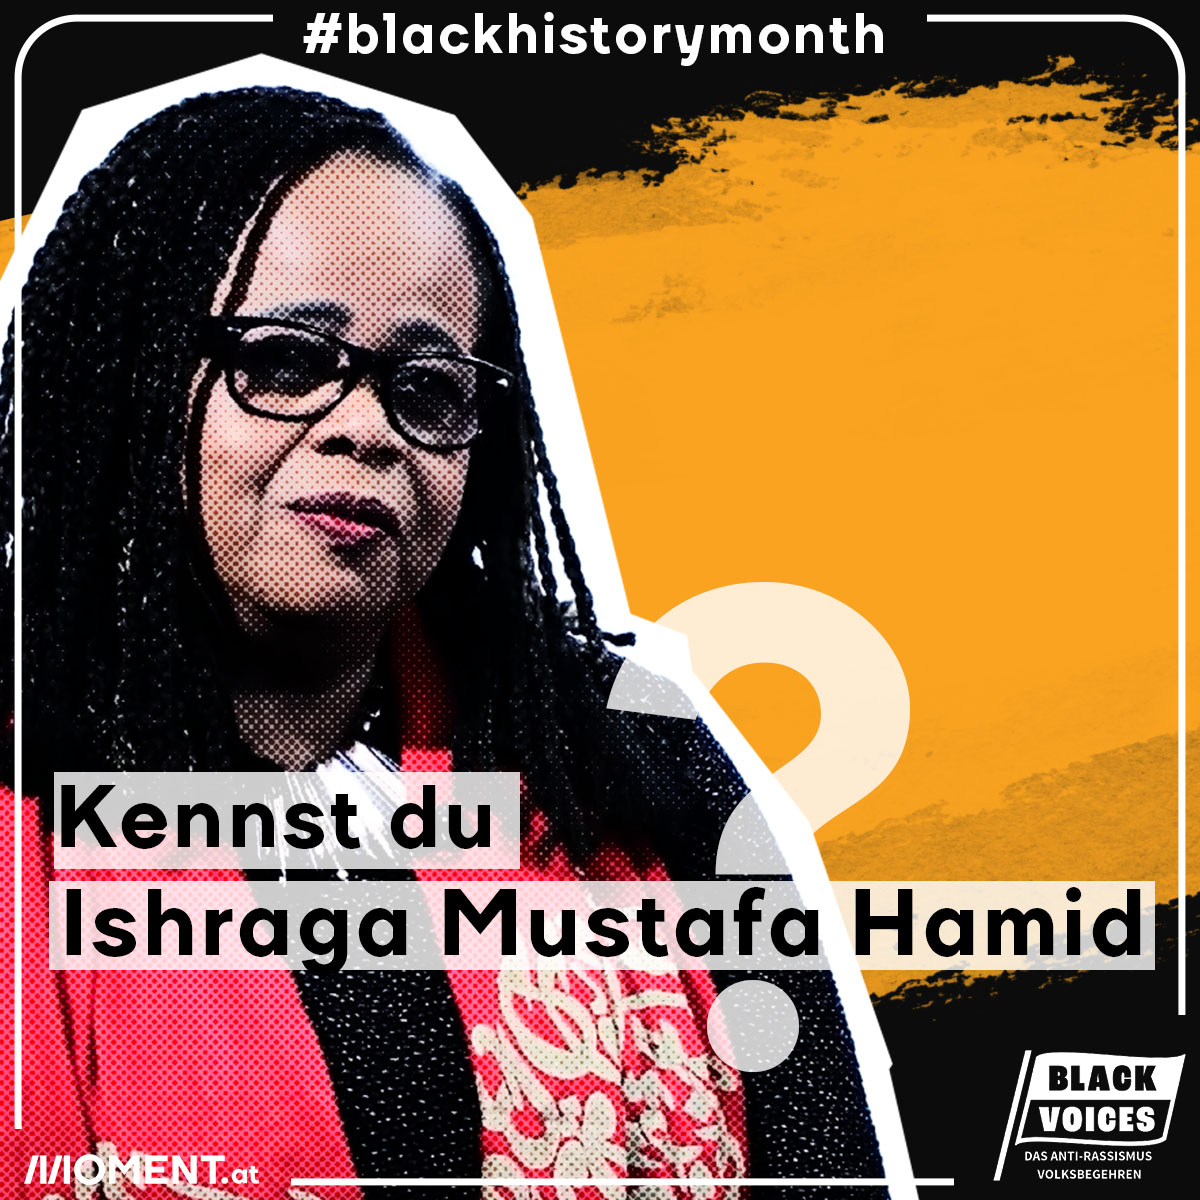 Porträt der Autorin, Aktivistin und Mitbegründerin der Schwarze Frauen Community Ishraga Mustafa Hamid.